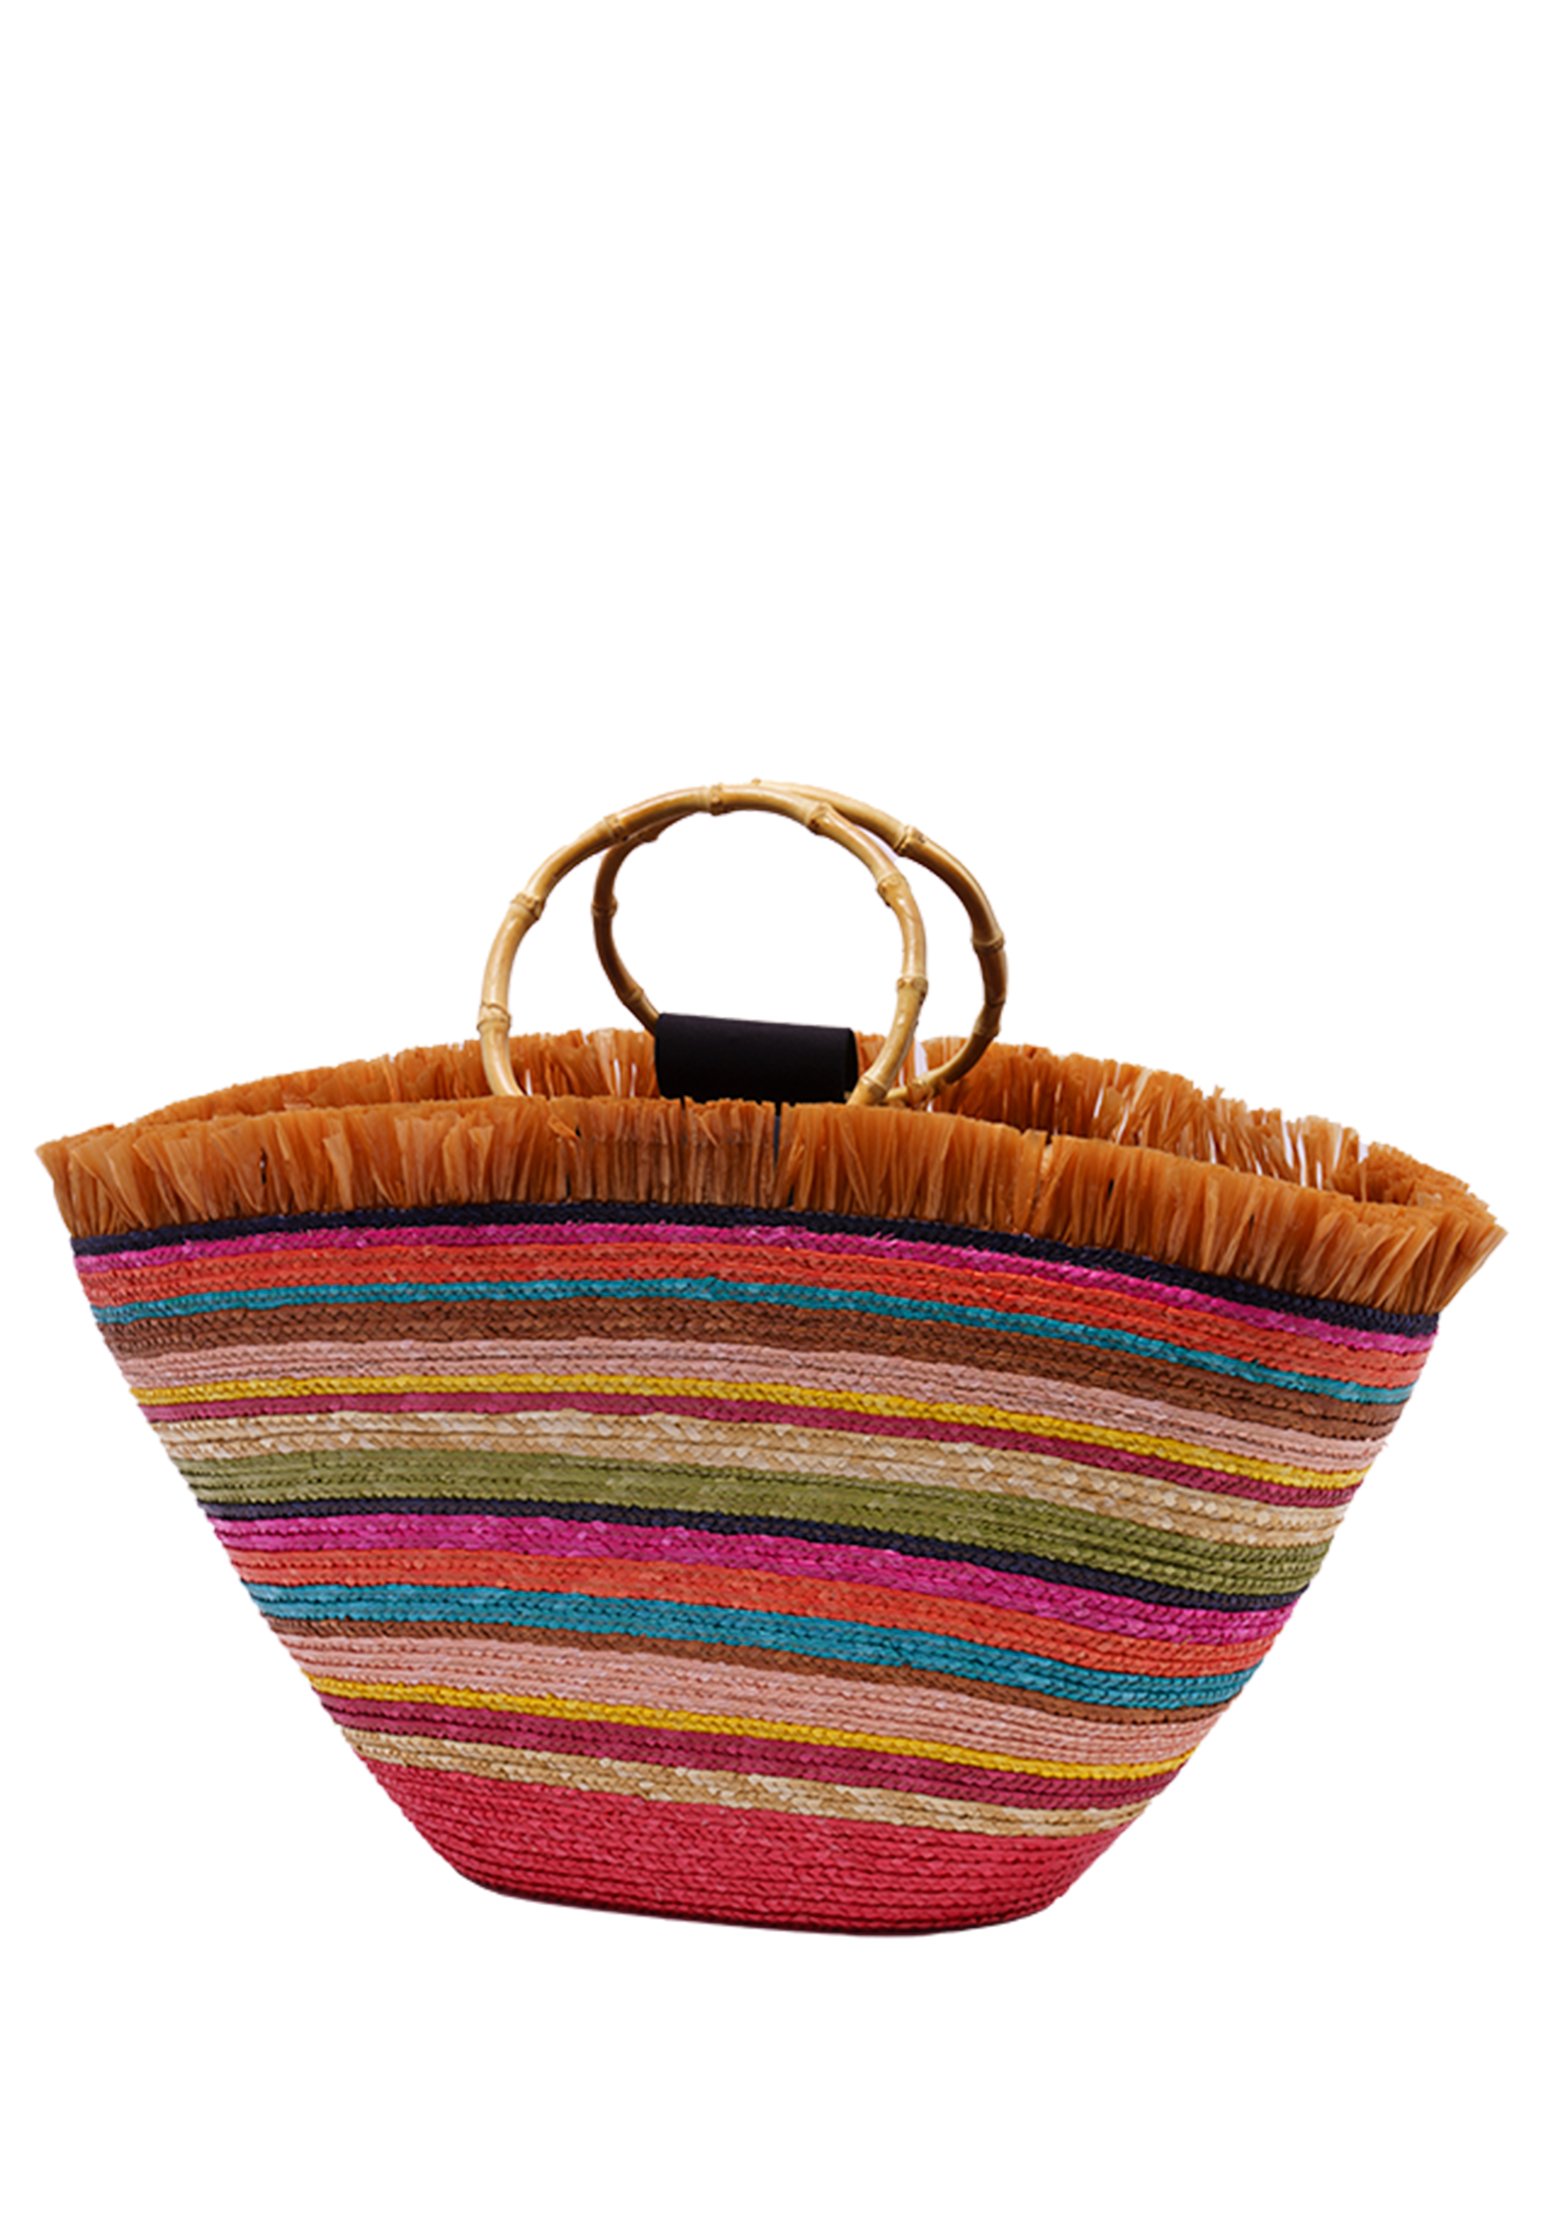 Bags FILIPPO CATARZI Color: multicolor (Code: 1896) in online store Allure